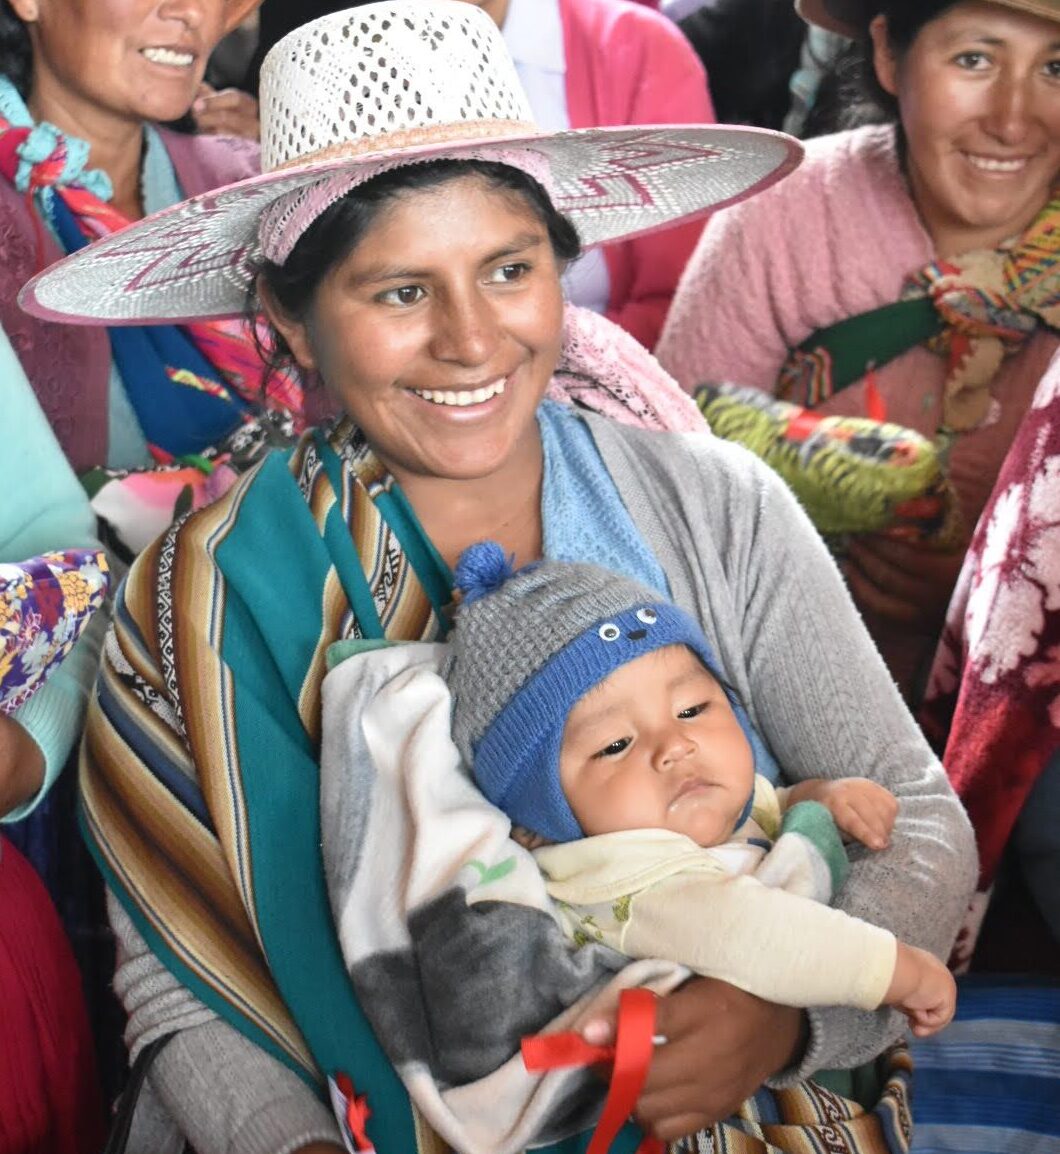 Madre en ropa tradicional boliviana titular de su hijo.